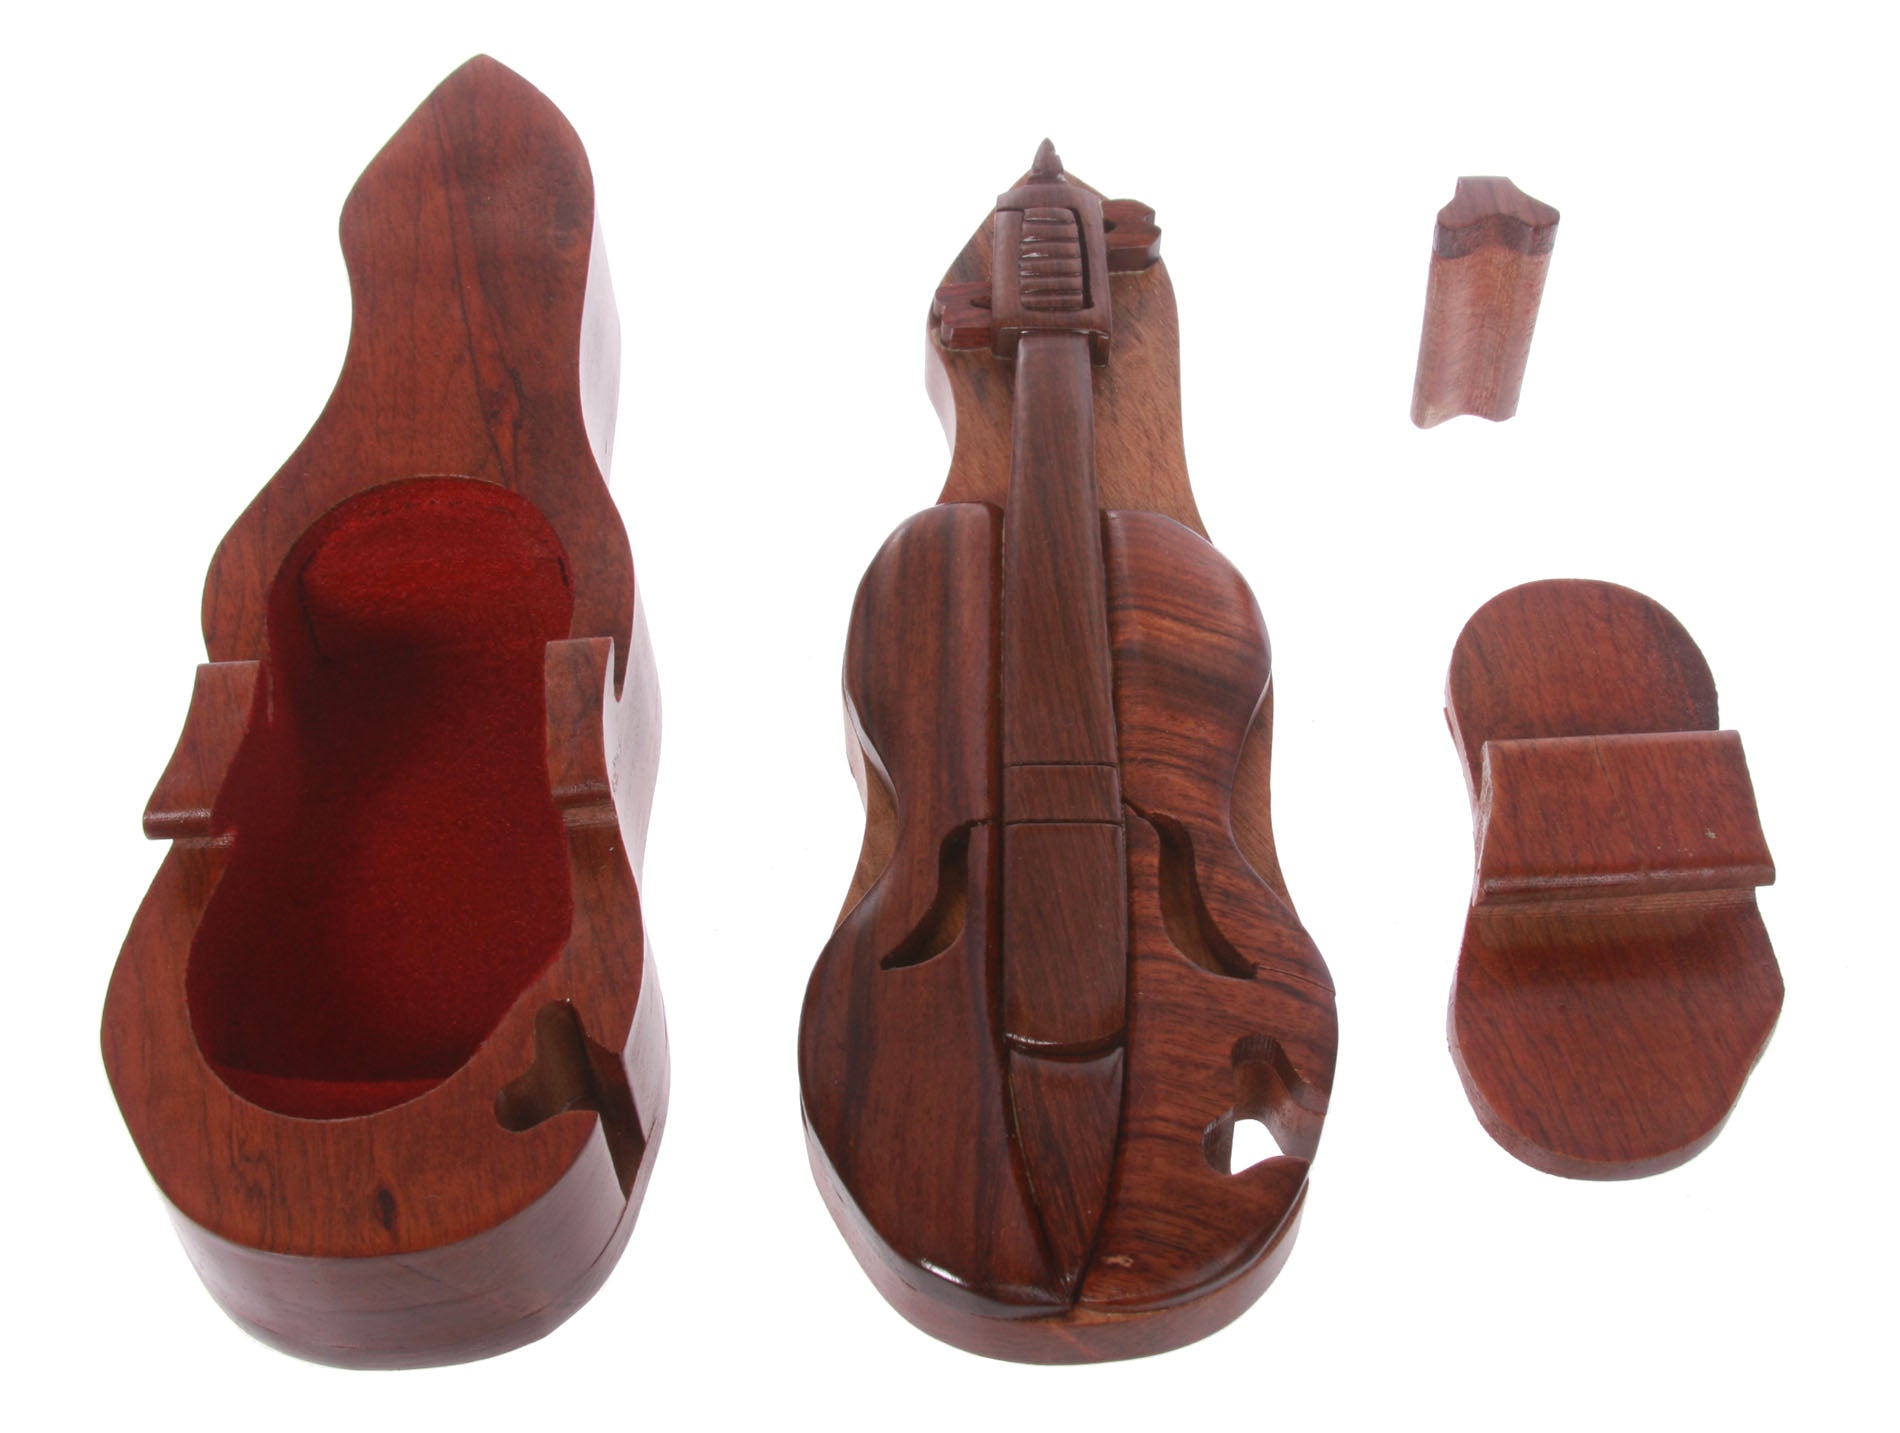 Handcrafted Wooden Cello Shape Secret Jewelry Puzzle Box -Cello